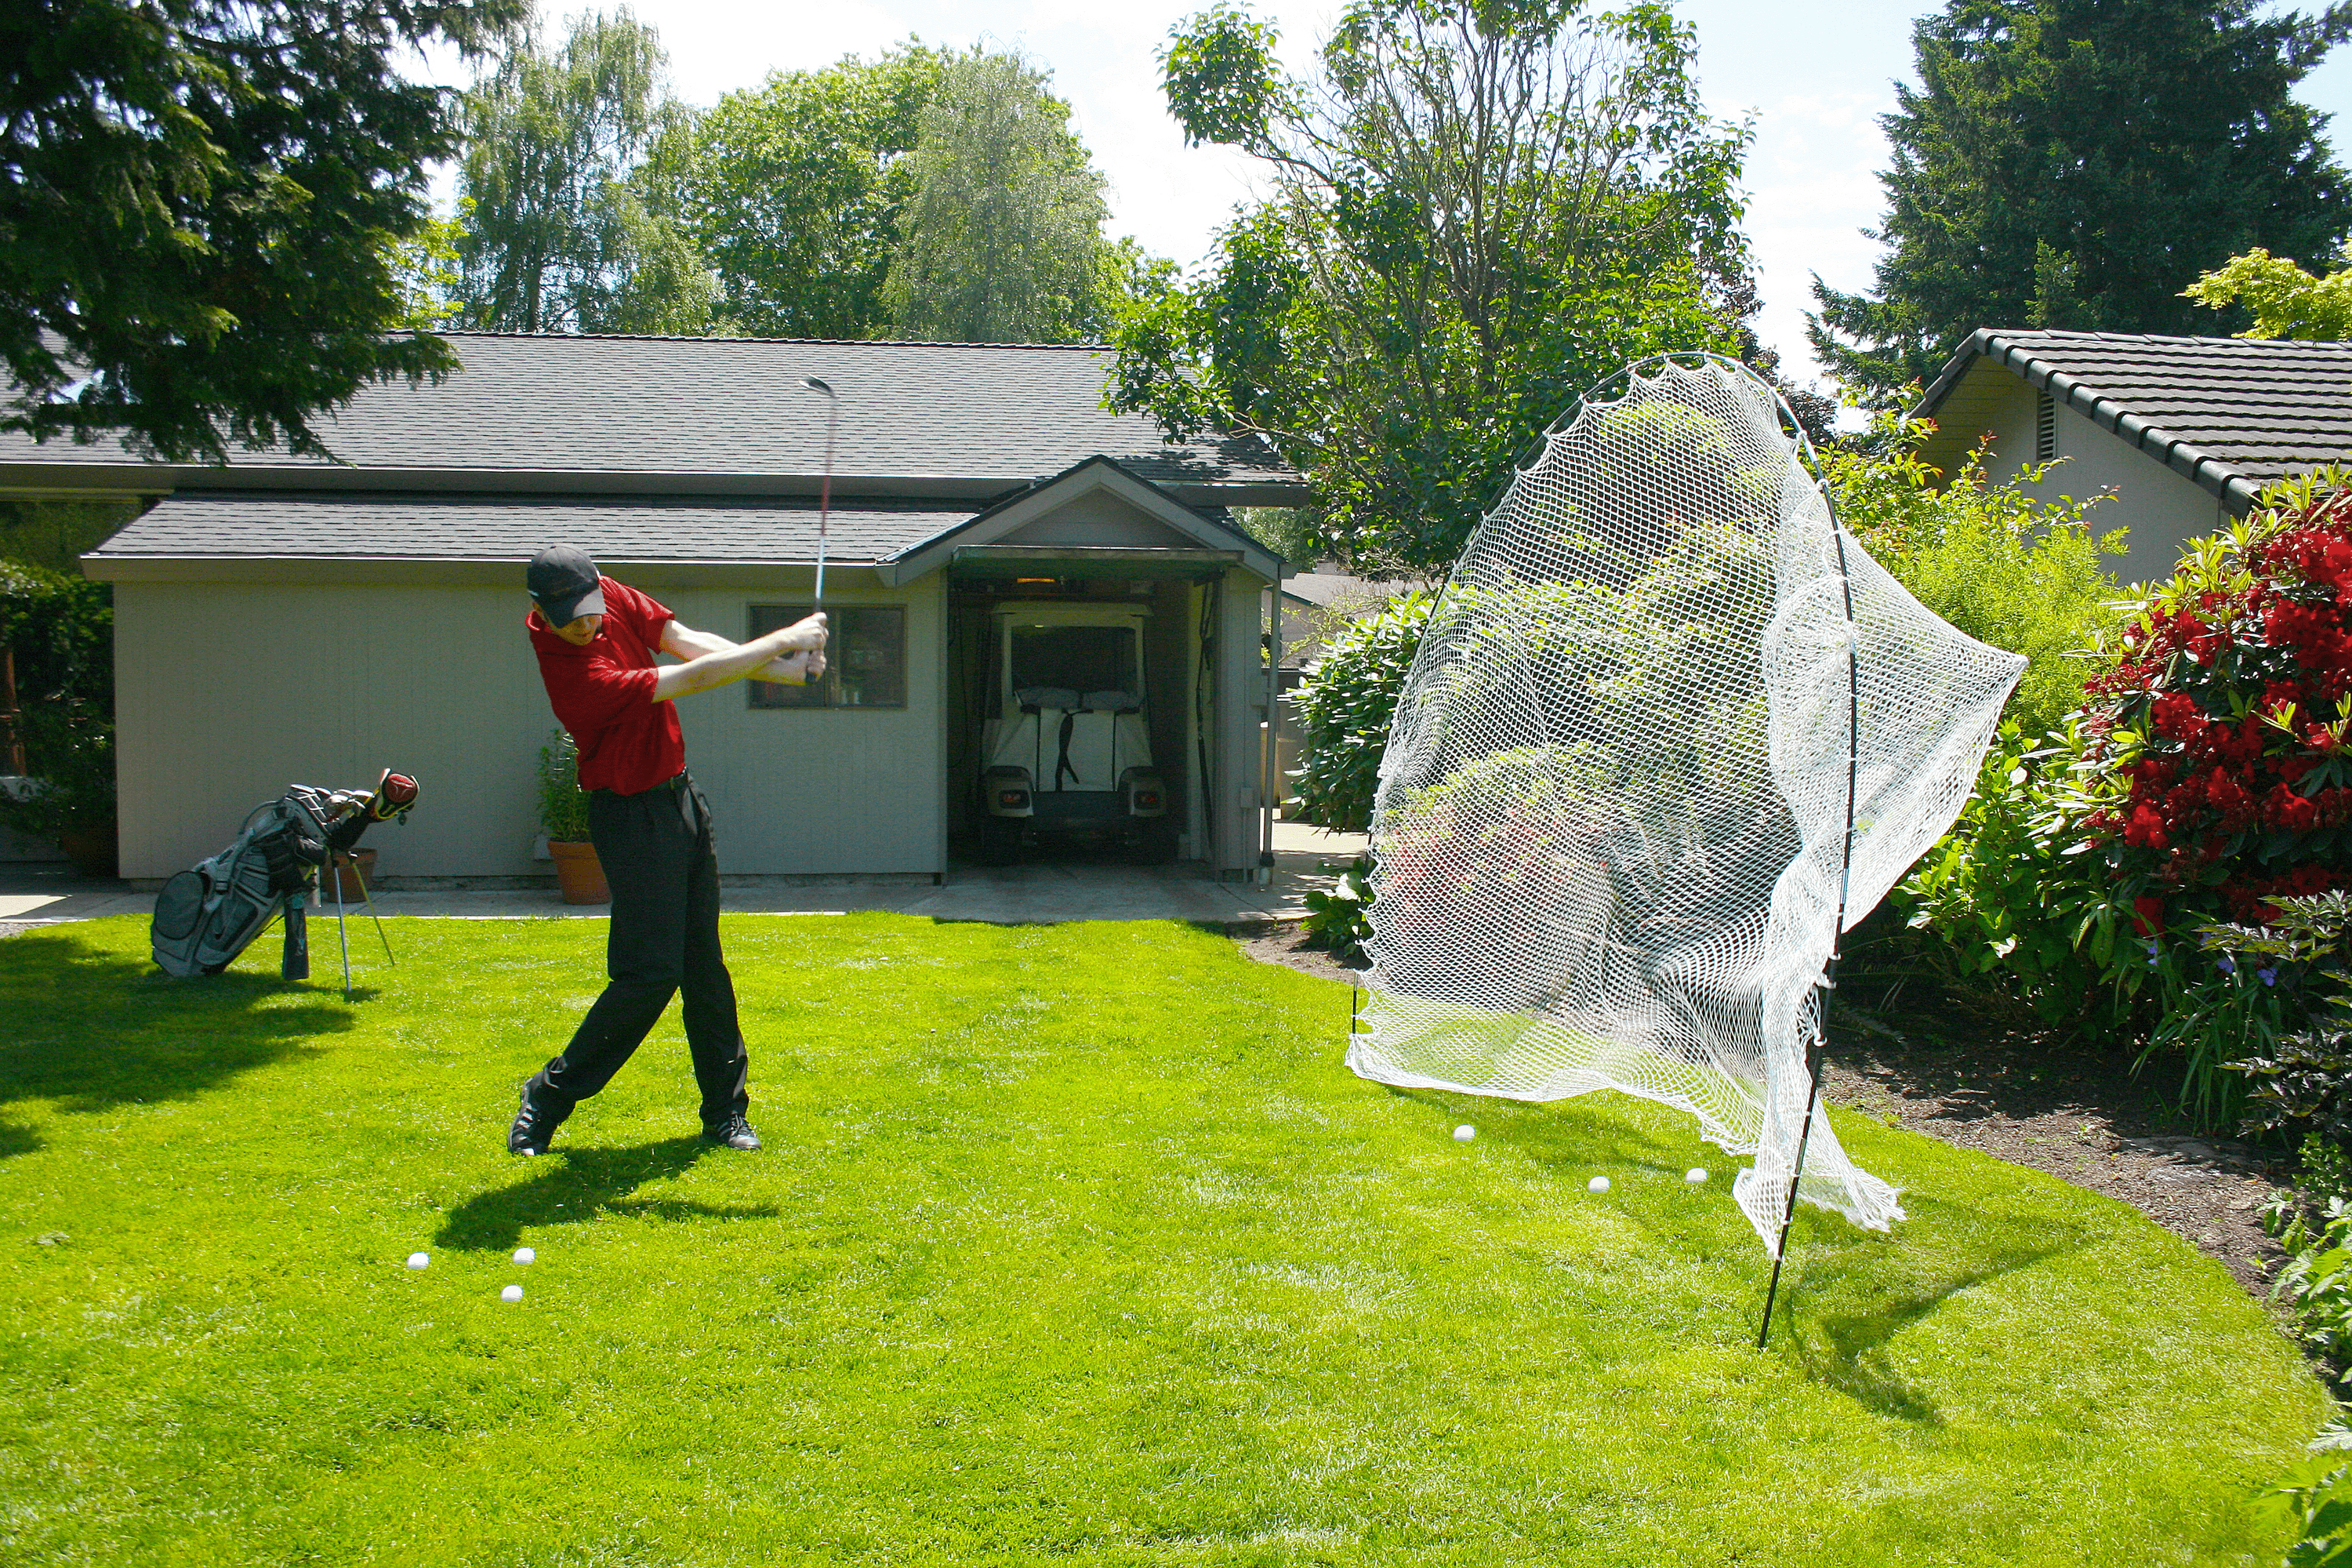 Go Net Backyard Golf Practice Hitting Net - image 3 of 3